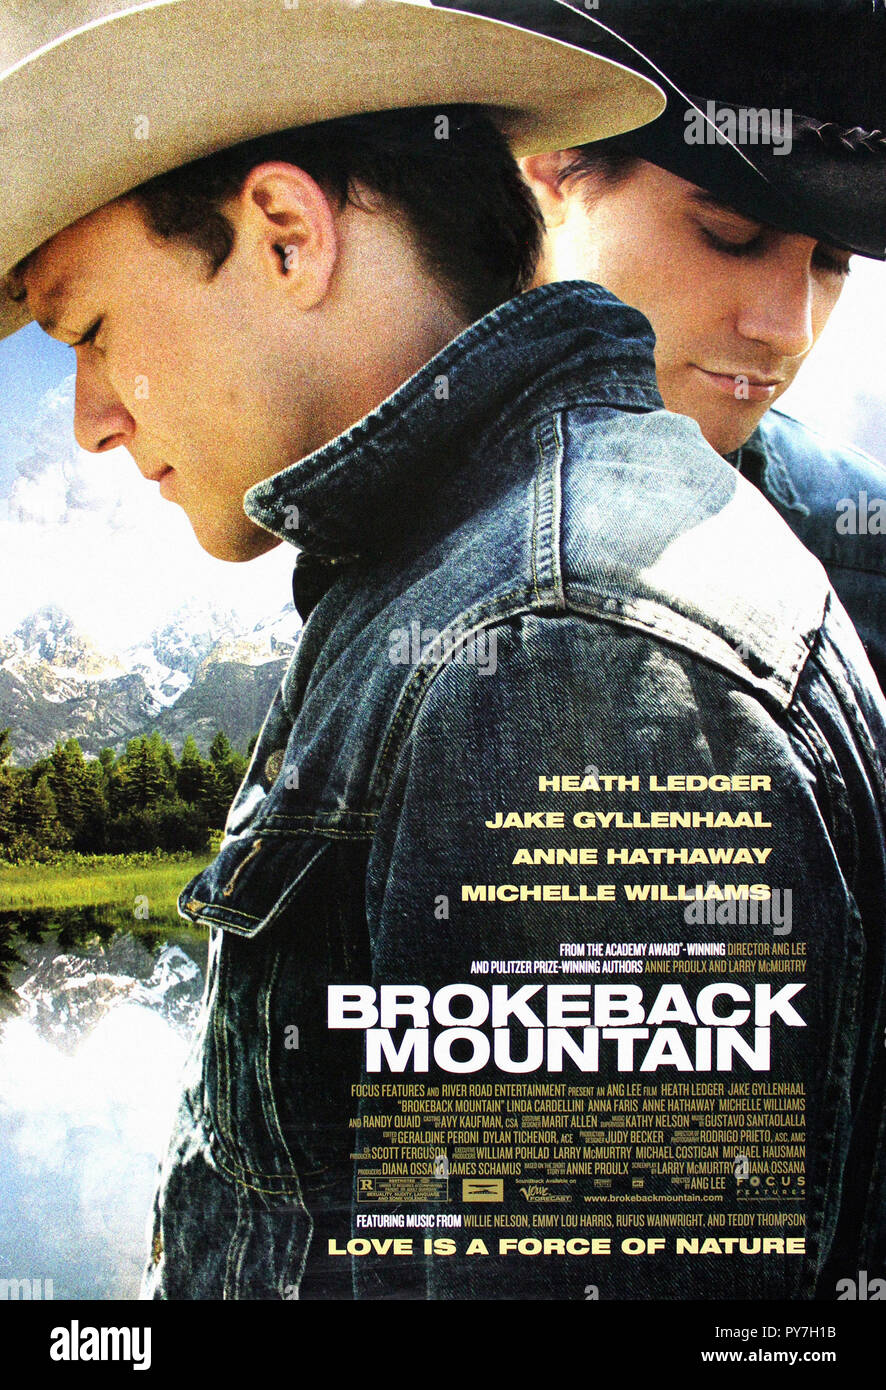 Brokeback Mountain - Original Movie Poster Stock Photo